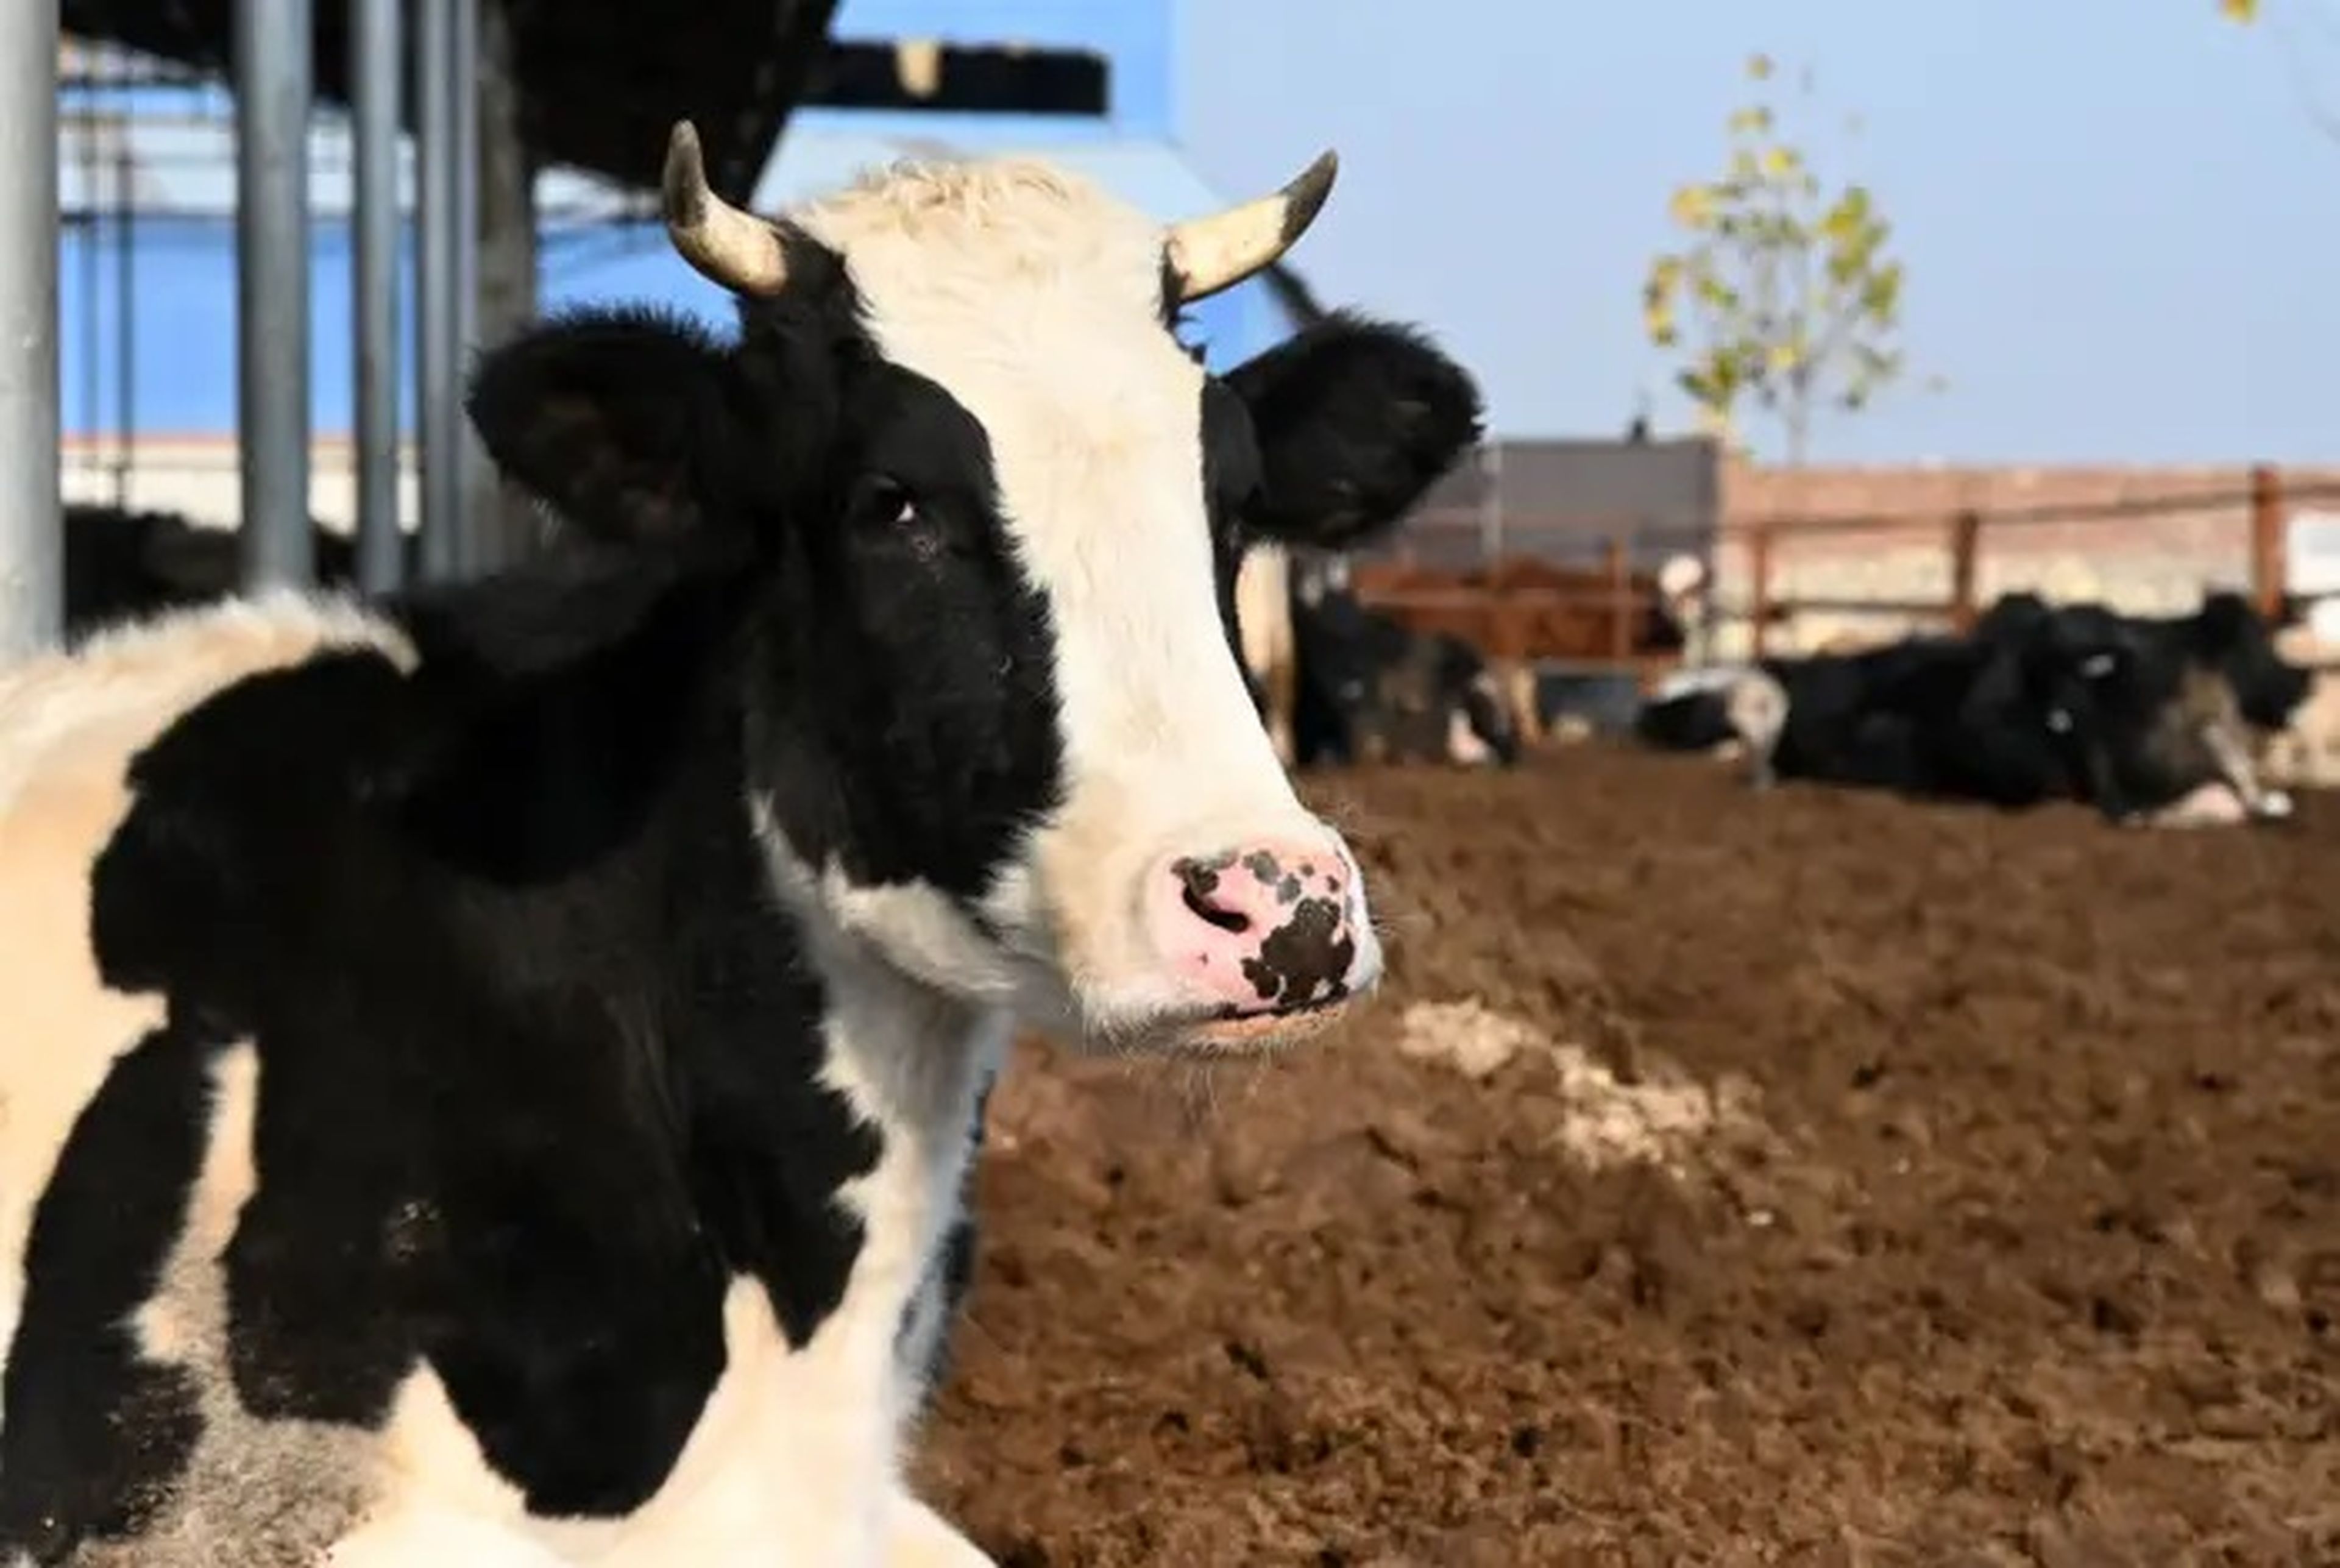 Los isótopos radiactivos pueden filtrarse en la leche de vaca.